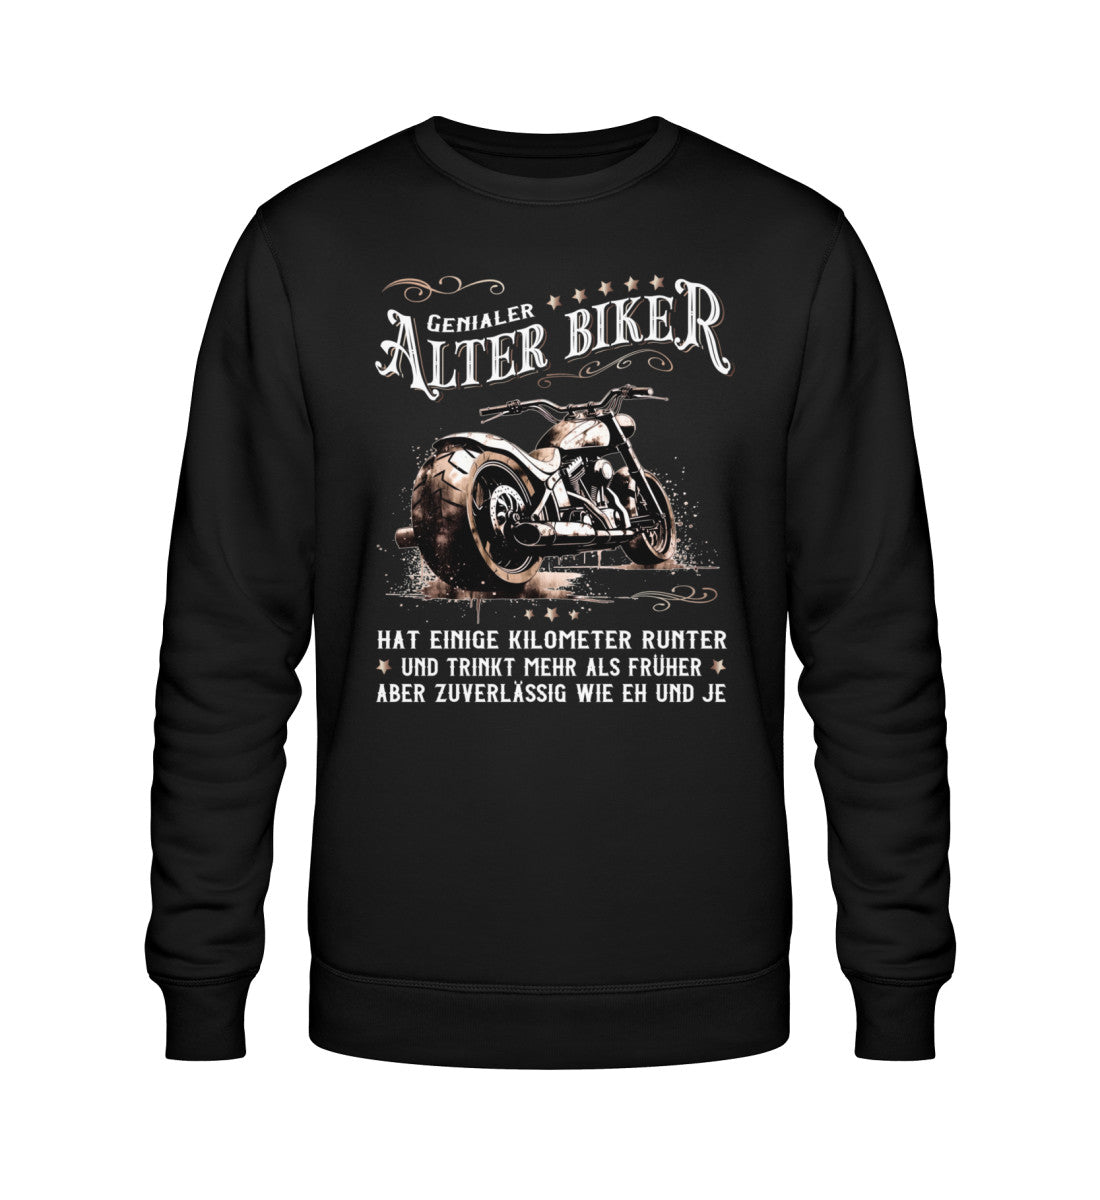 Ein Biker Sweatshirt für Motorradfahrer von Wingbikers mit dem Aufdruck, Alter Biker - Einige Kilometer runter, trinkt mehr - aber zuverlässig wie eh und je - in schwarz.